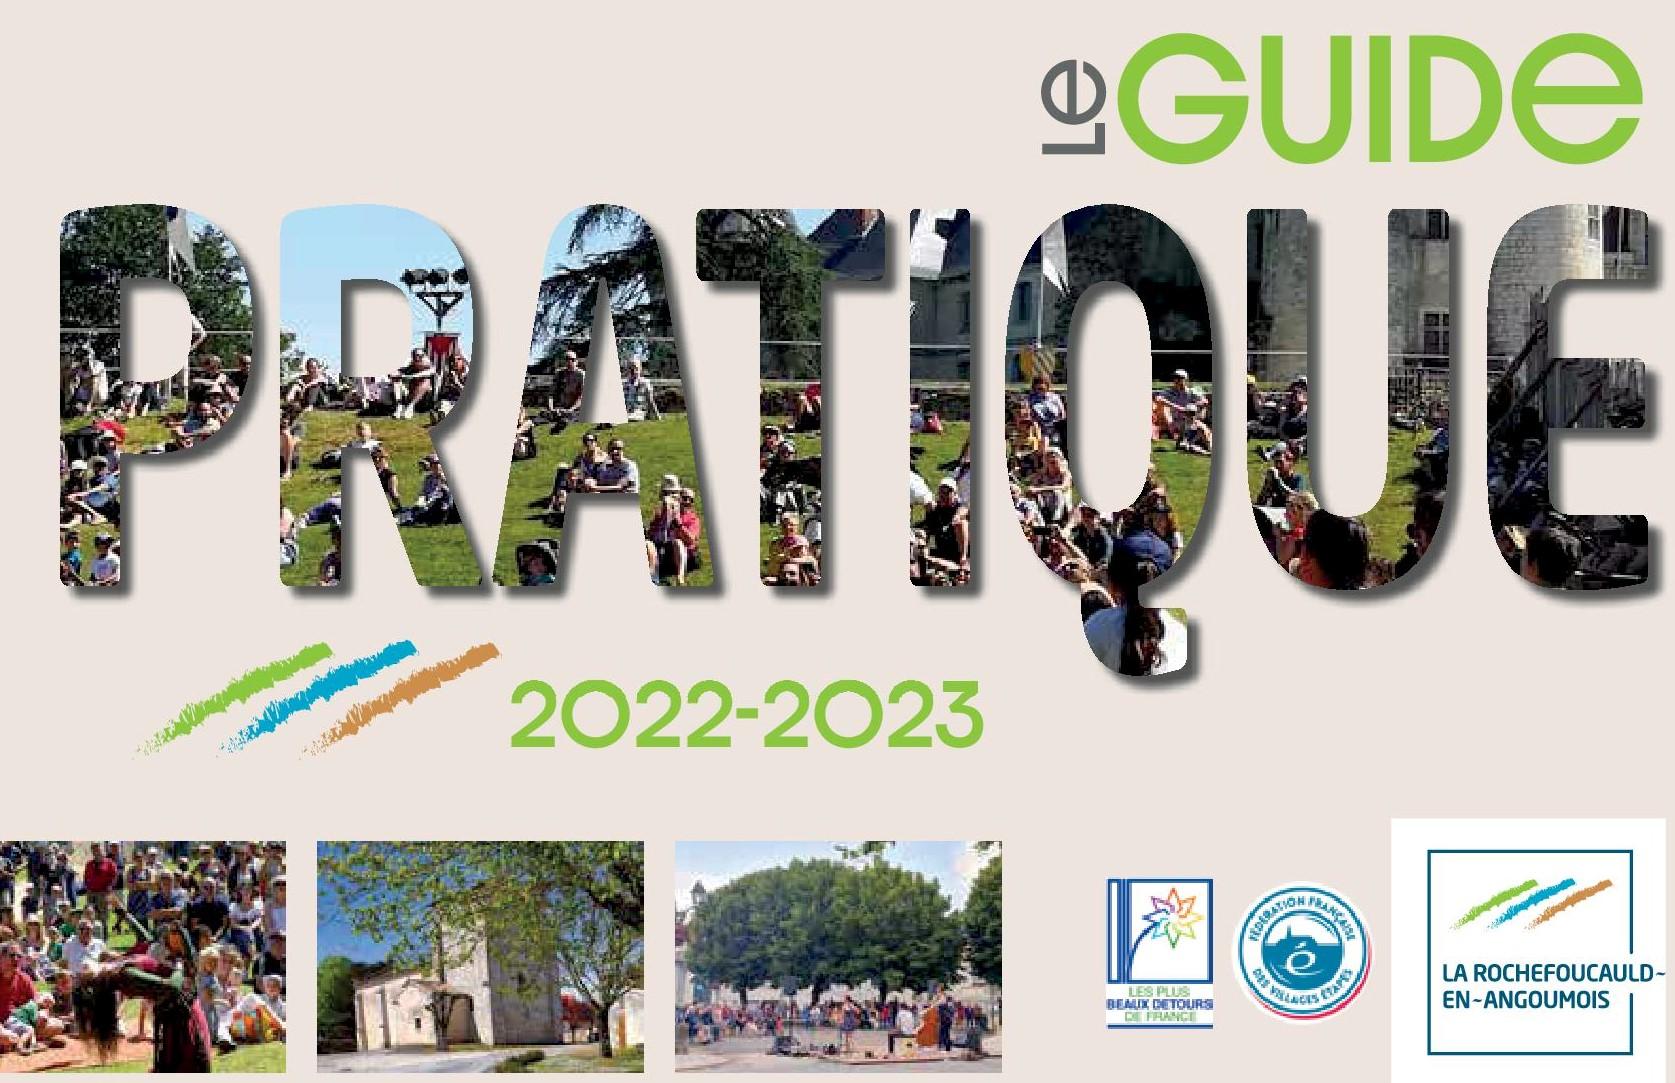 La rochefoucauld guide 2022 bd 1